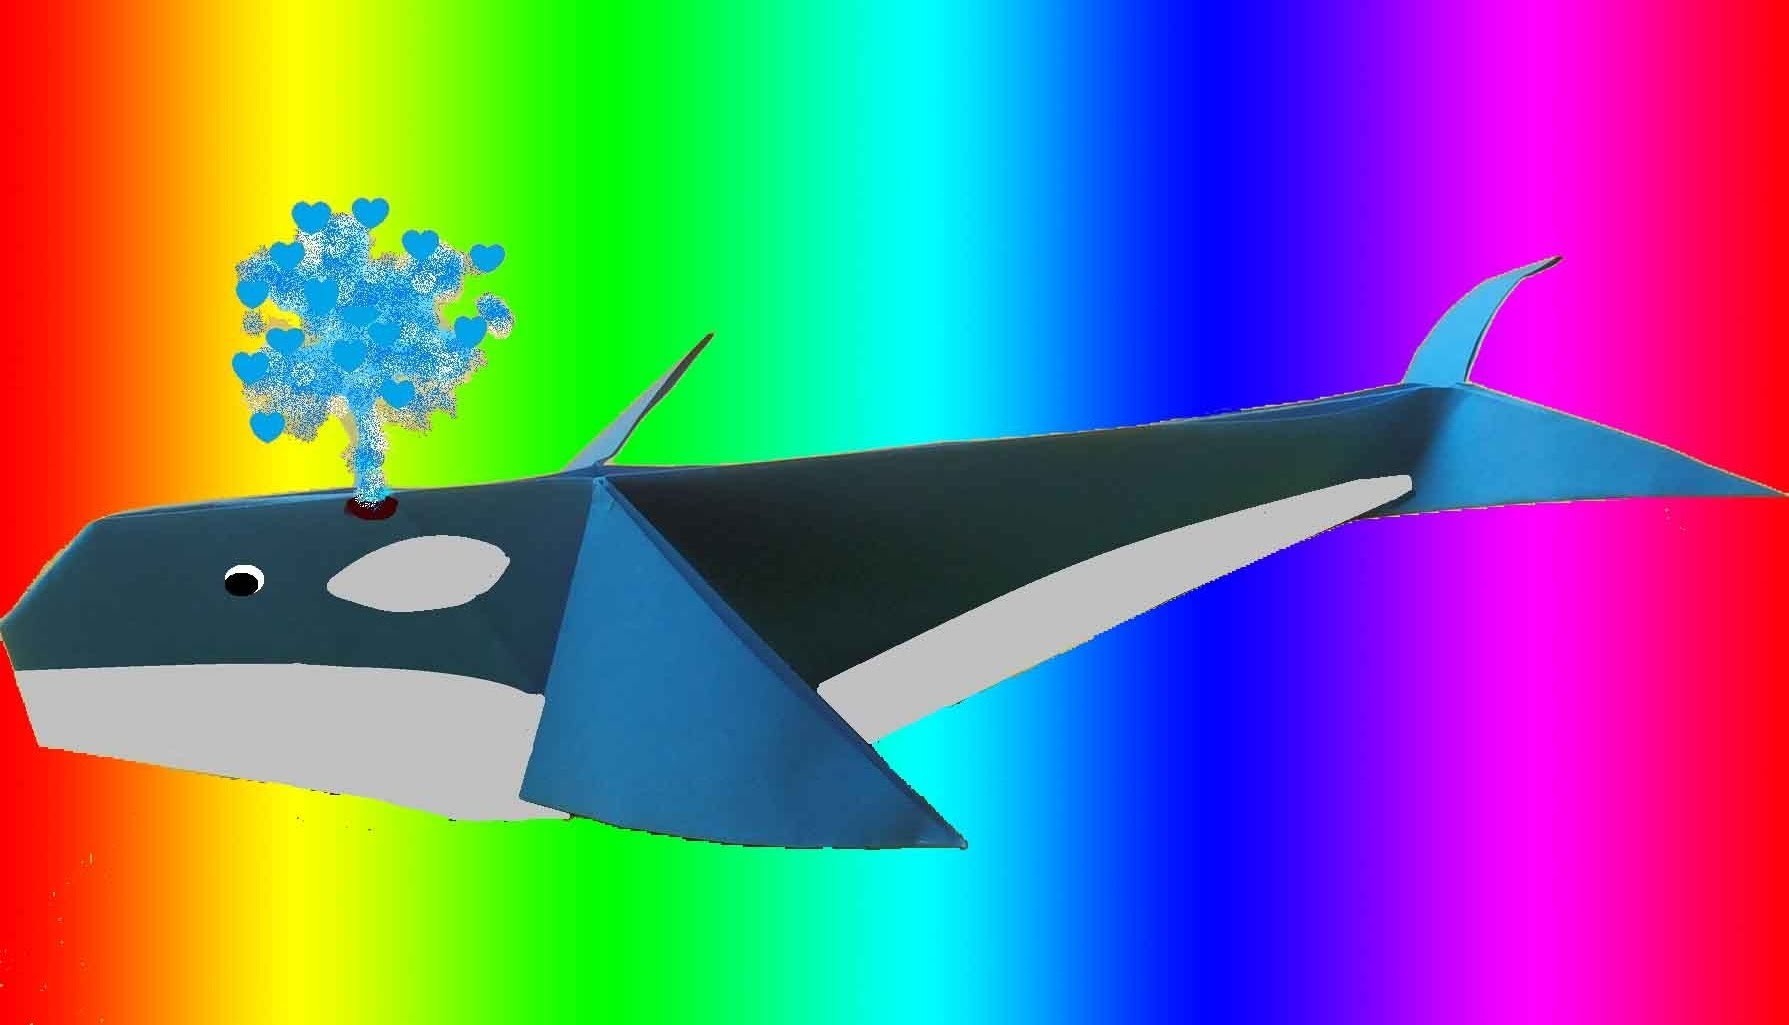 CURSO DE PAPIROFLEXIA gratis 9 Ballena de papel, Tutorial origami whale DIY